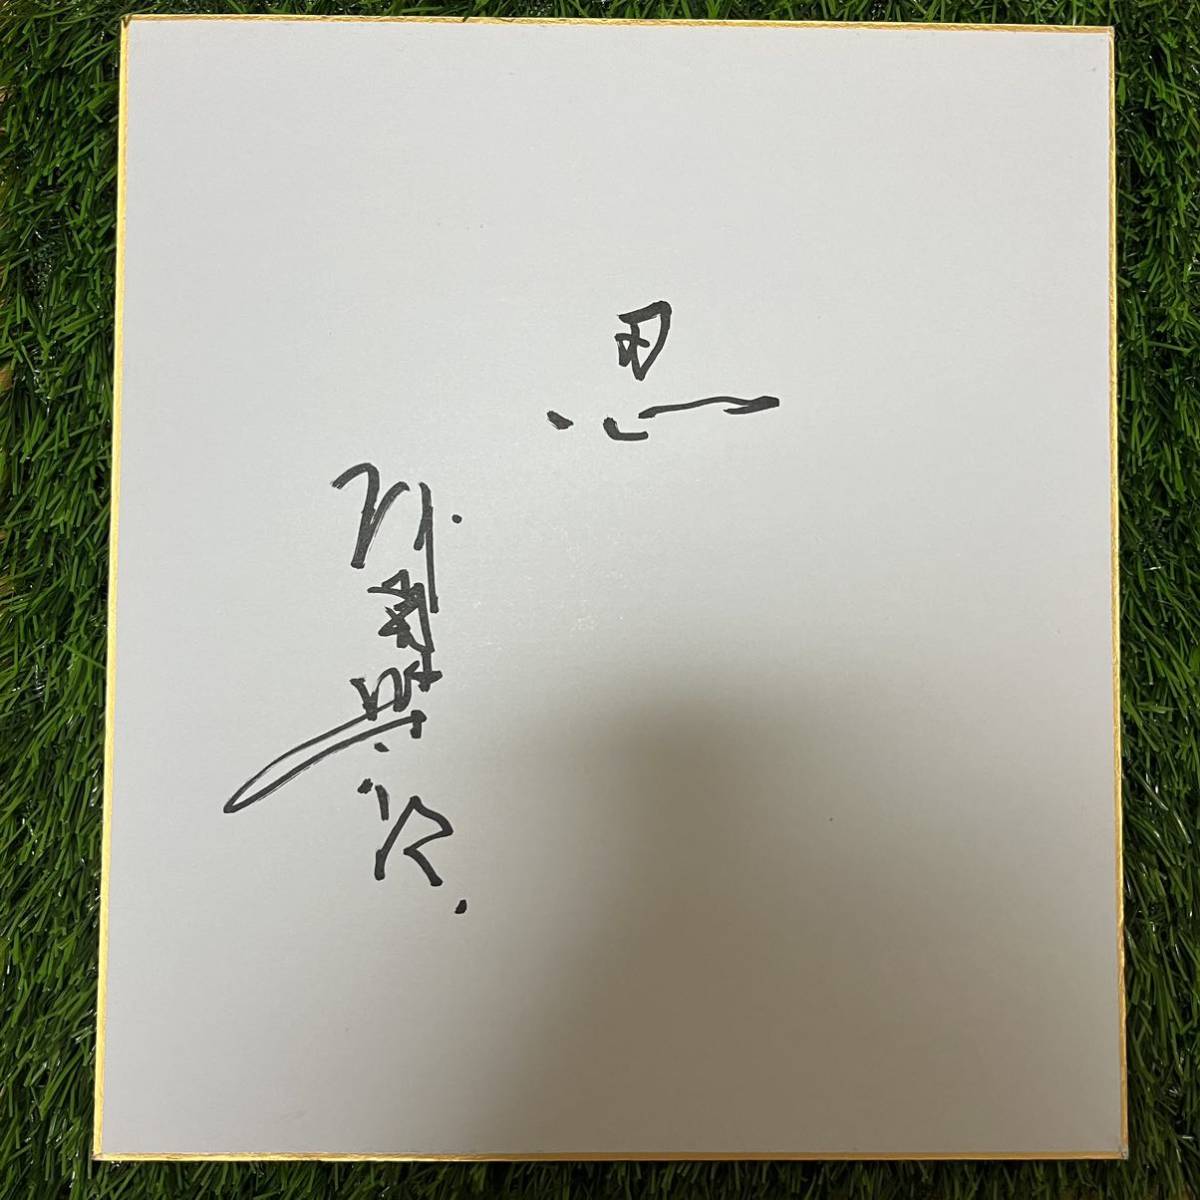 广岛东洋鲤鱼 OB 二郎阿南经理亲笔签名式子近铁水牛, 棒球, 纪念品, 相关商品, 符号